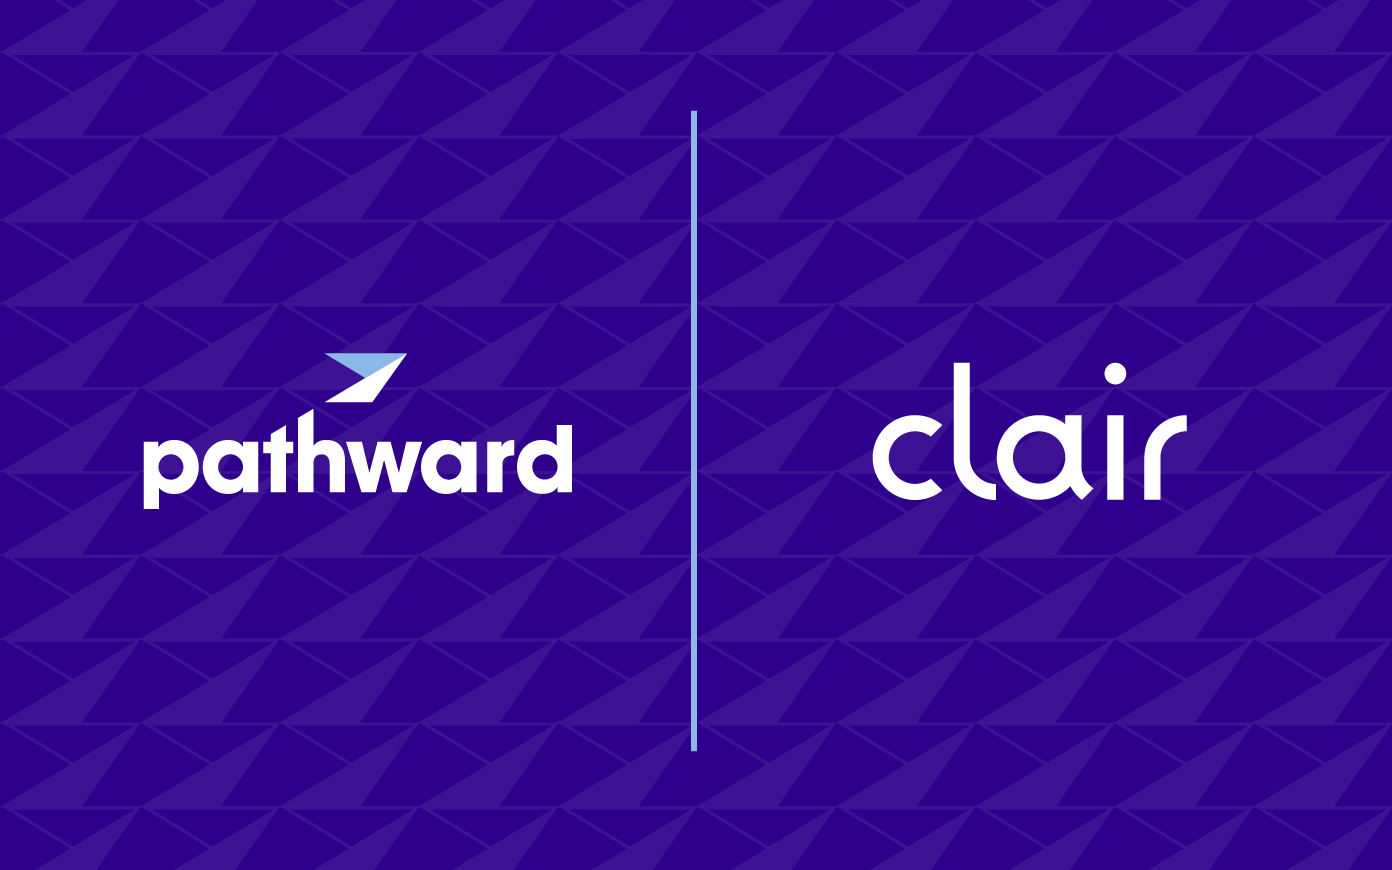 Fintech company Clair raises $175 million